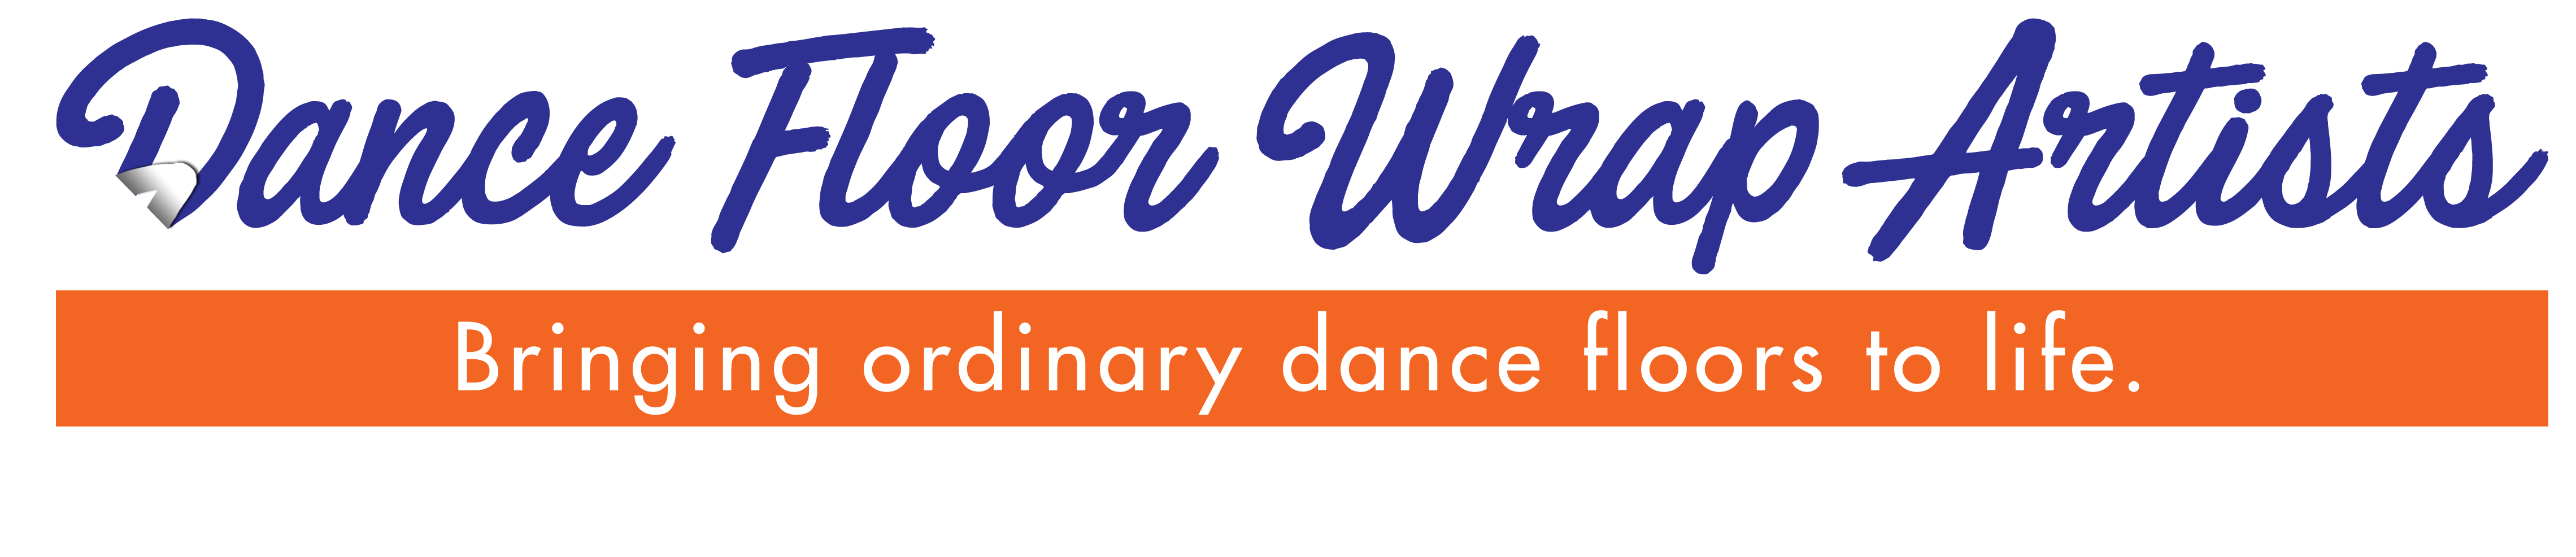 dance floor wrap artists logo - 1 line